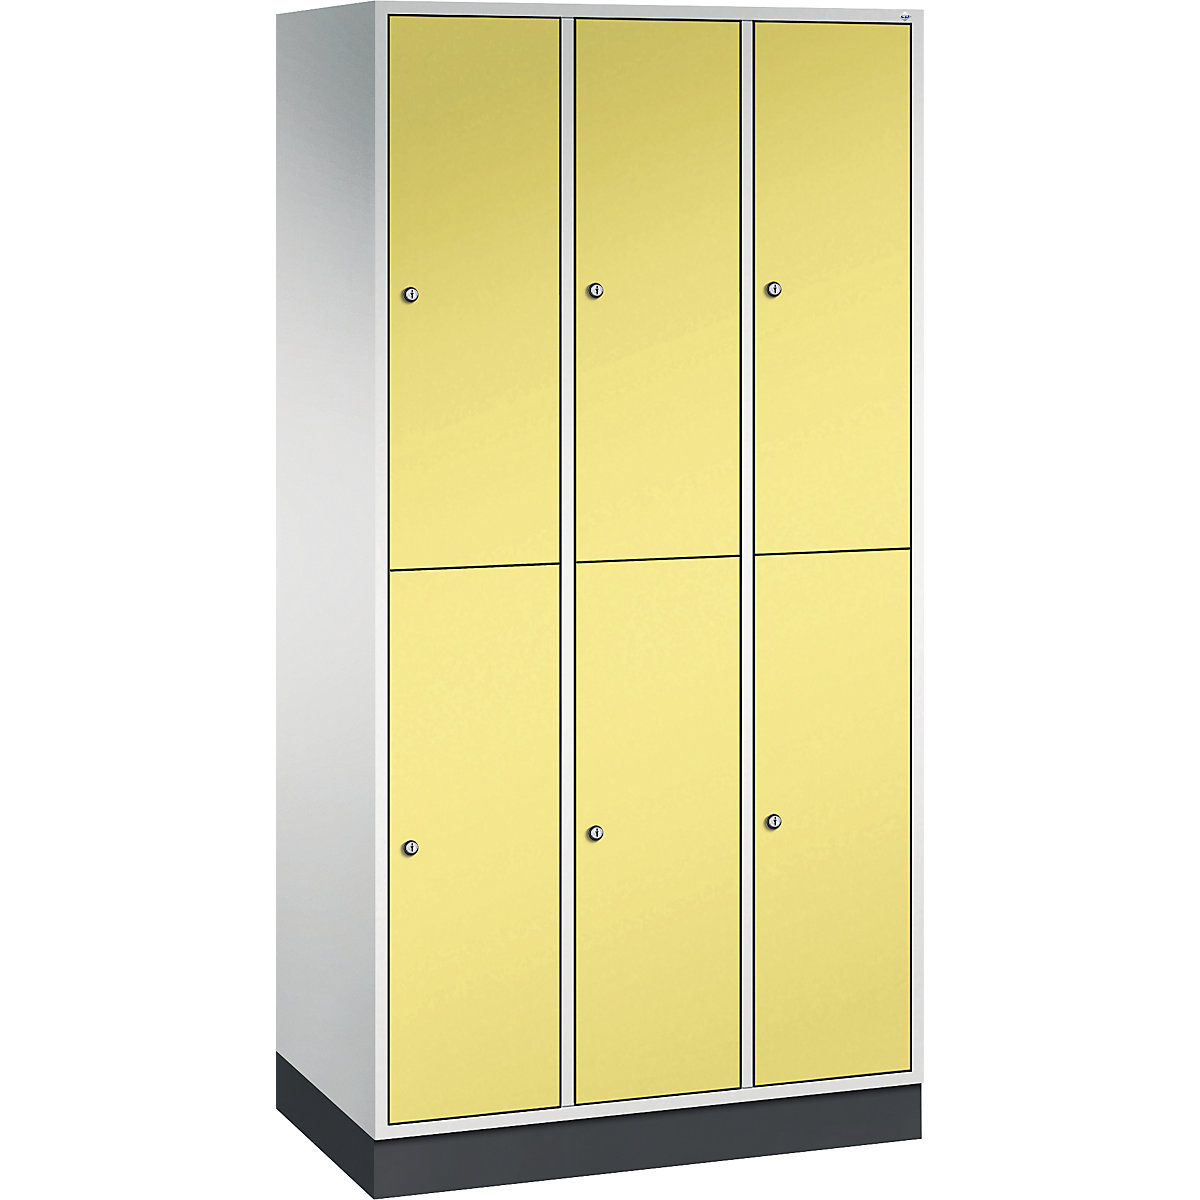 INTRO double tier steel cloakroom locker – C+P, WxD 920 x 500 mm, 6 compartments, light grey body, sulphur yellow doors